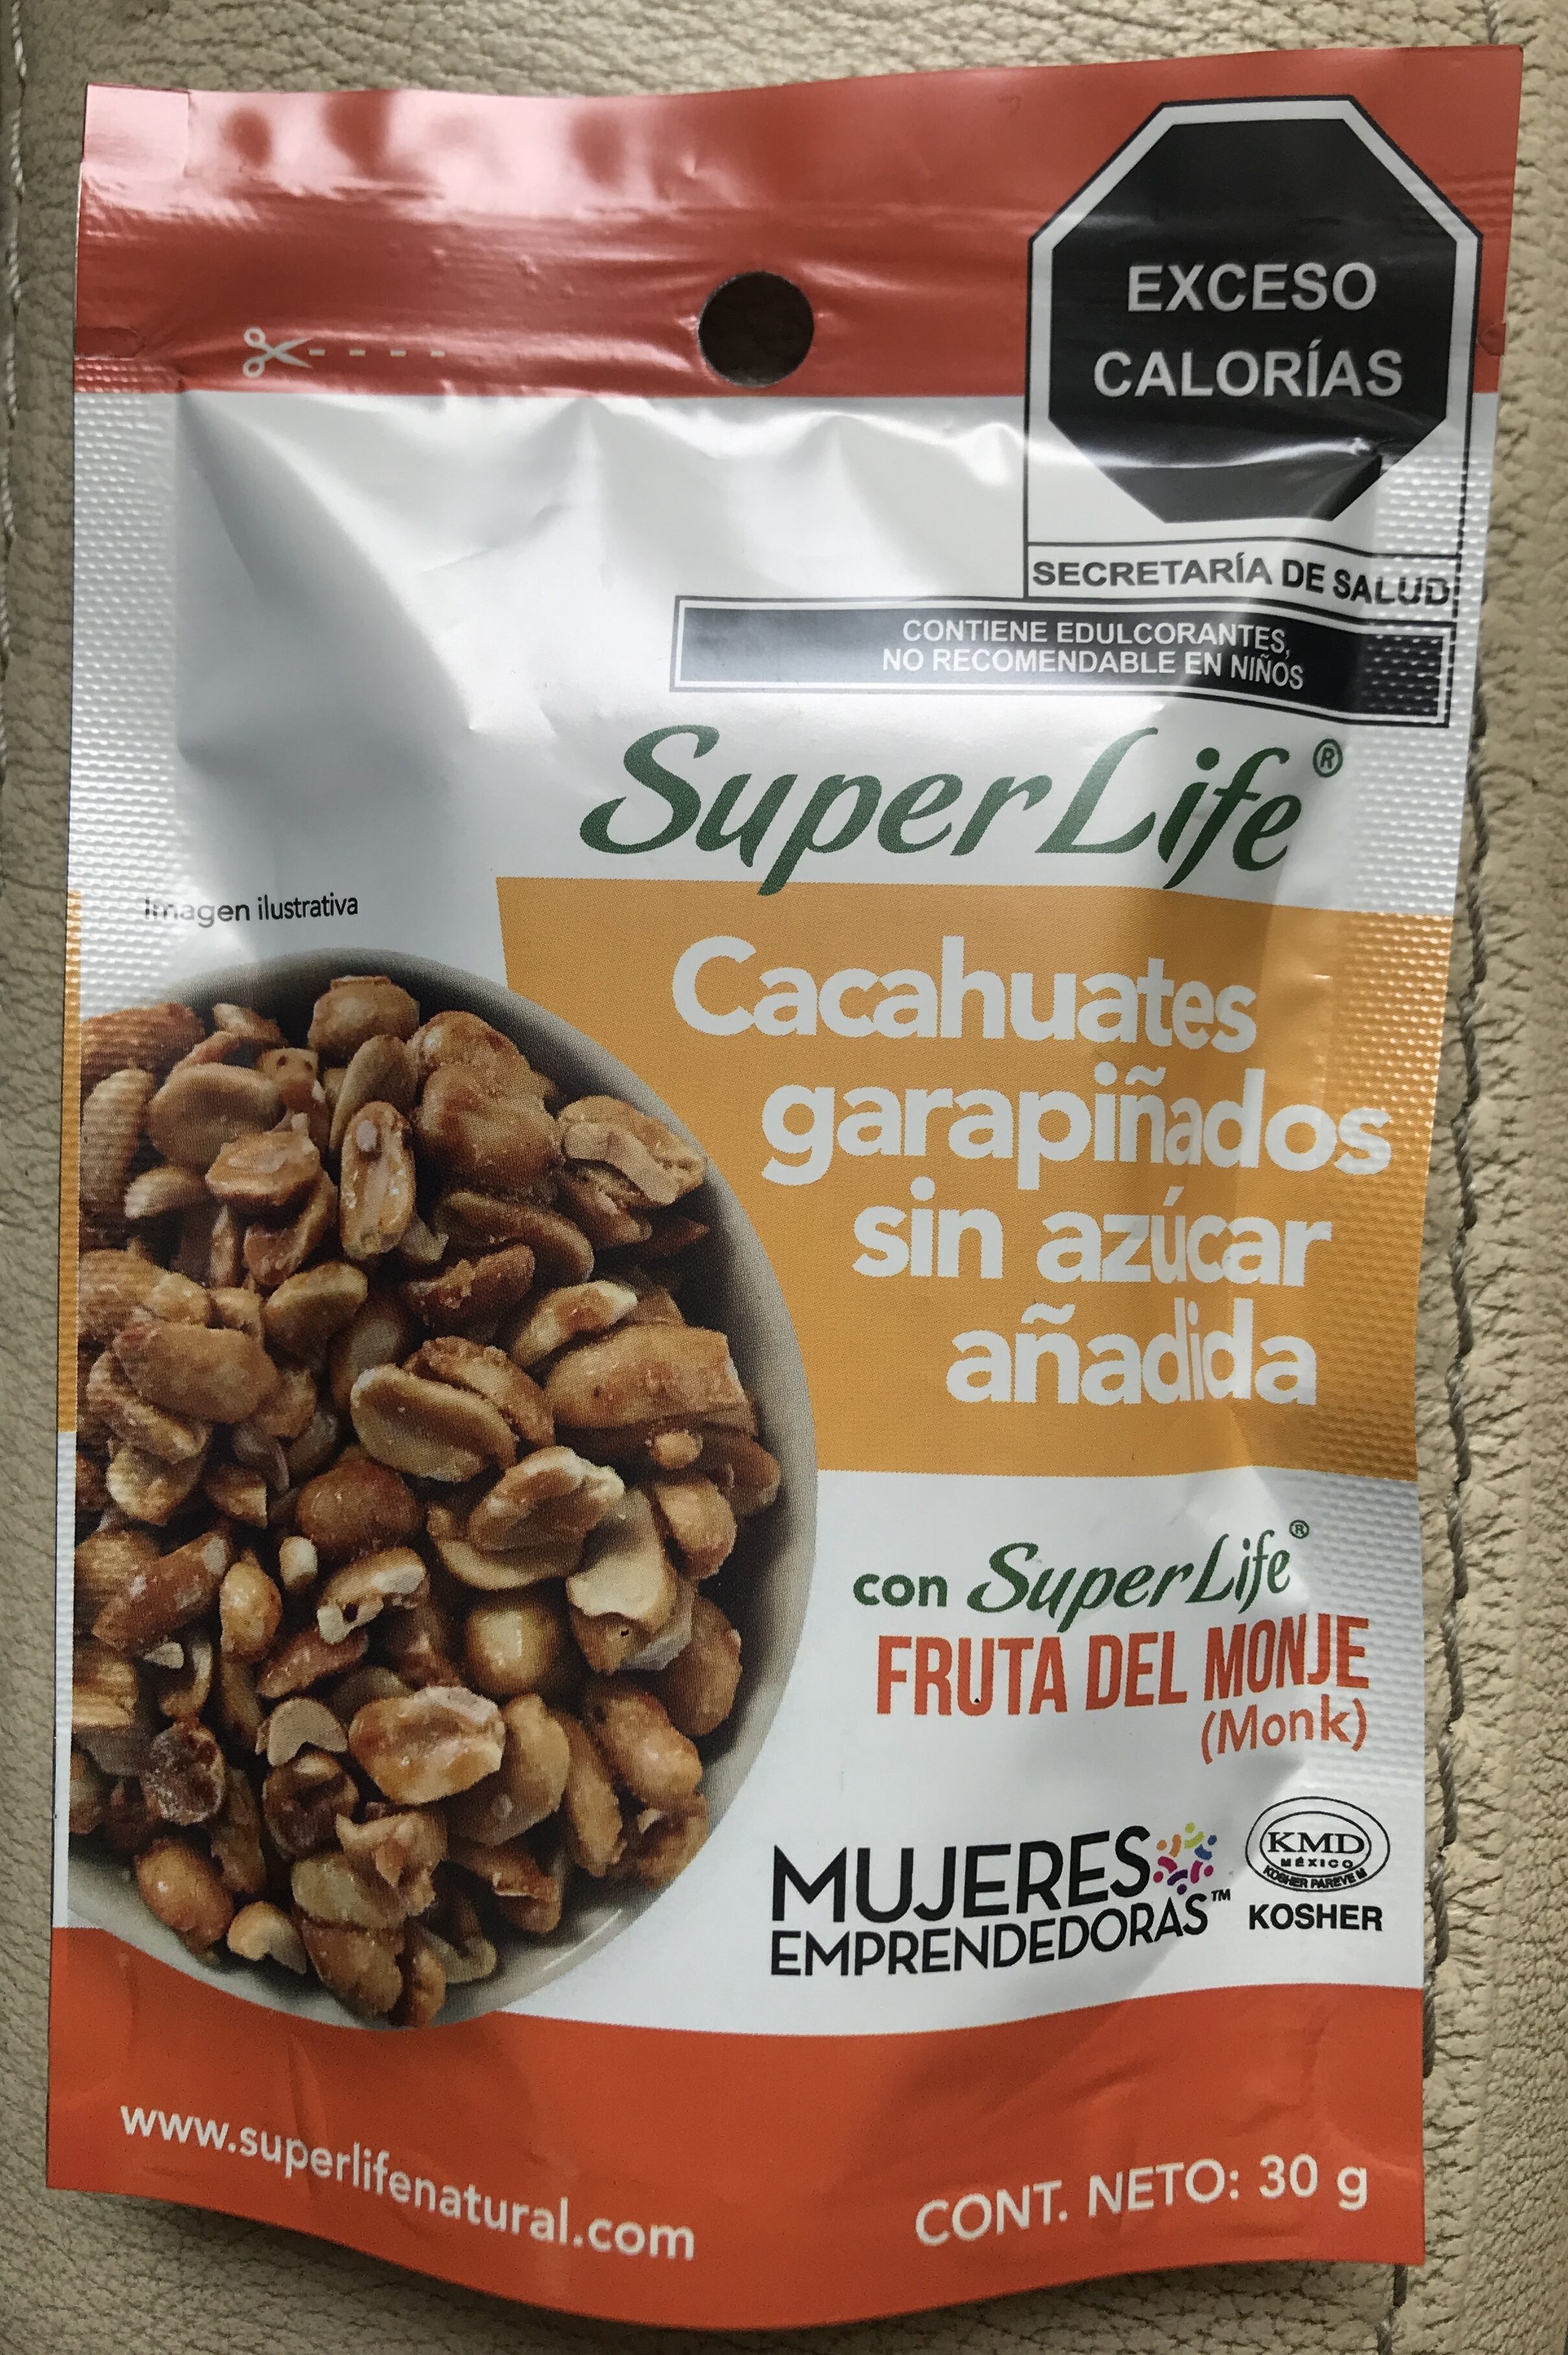 Cacahuate garapiñado sin azucar añadida - Product - es